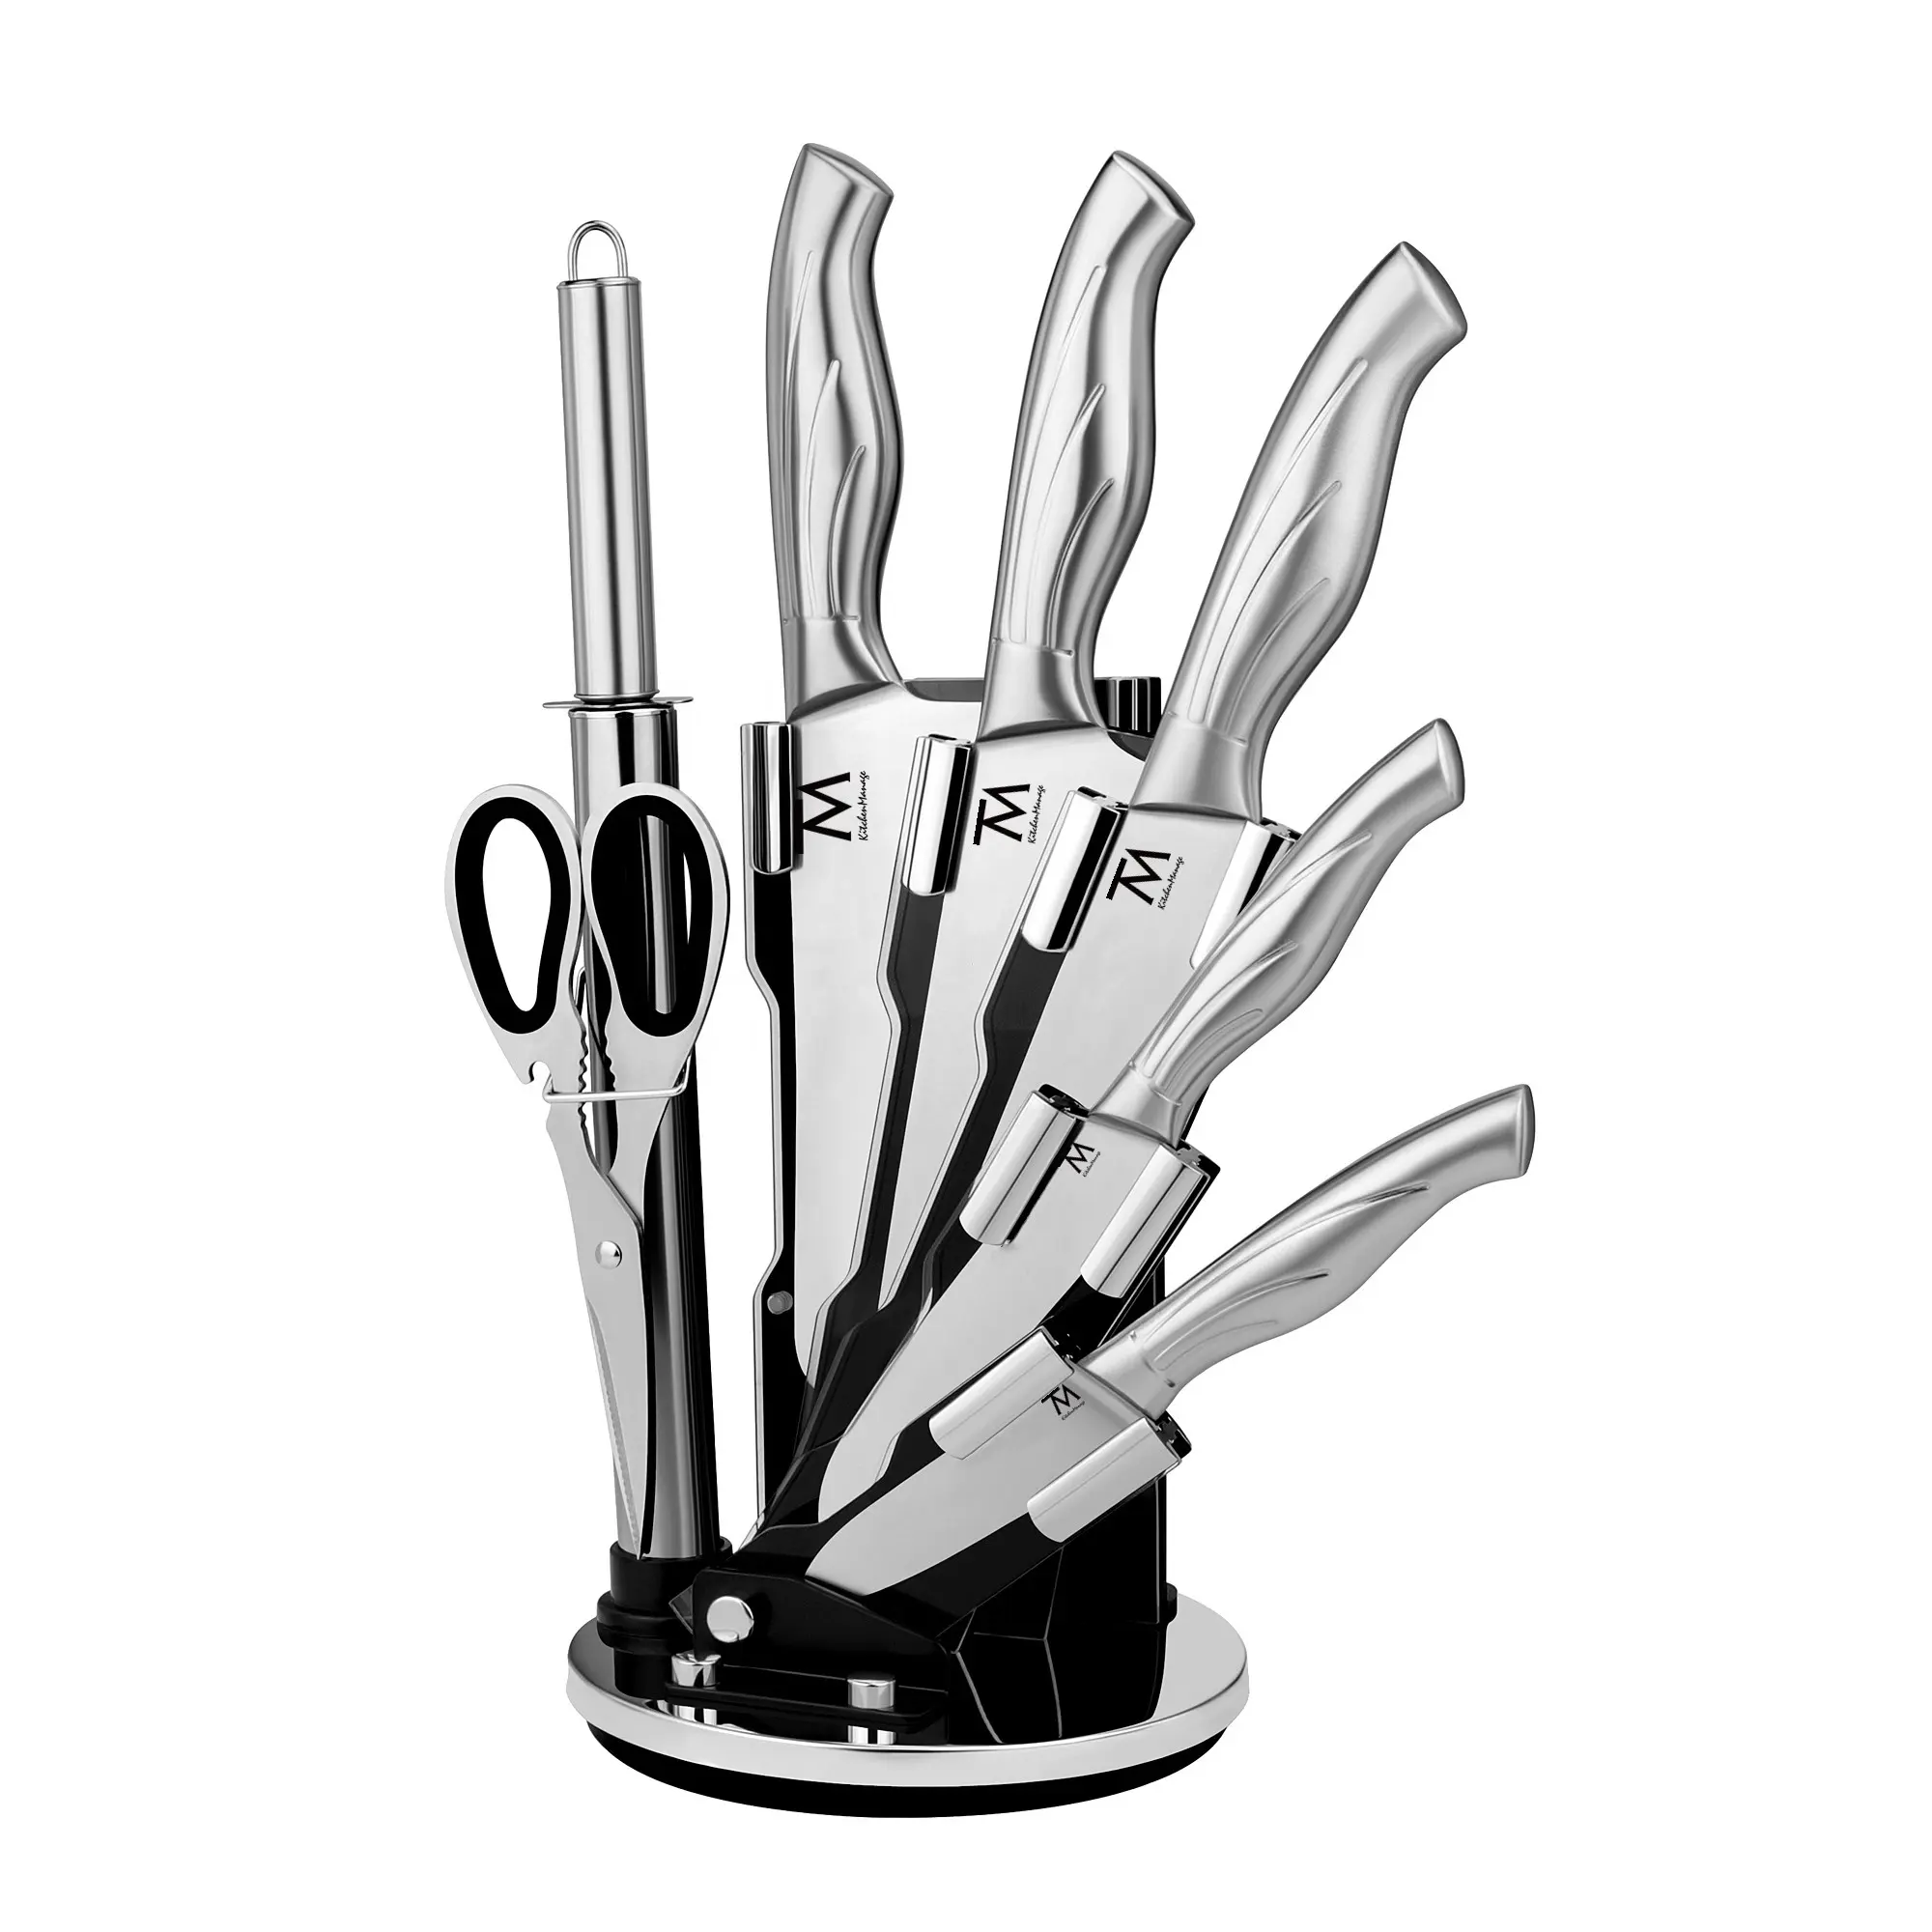 Messer conjunto de faca de cozinha de aço inoxidável, conjunto profissional de bloco de faca de cozinha com afiador, 8 peças